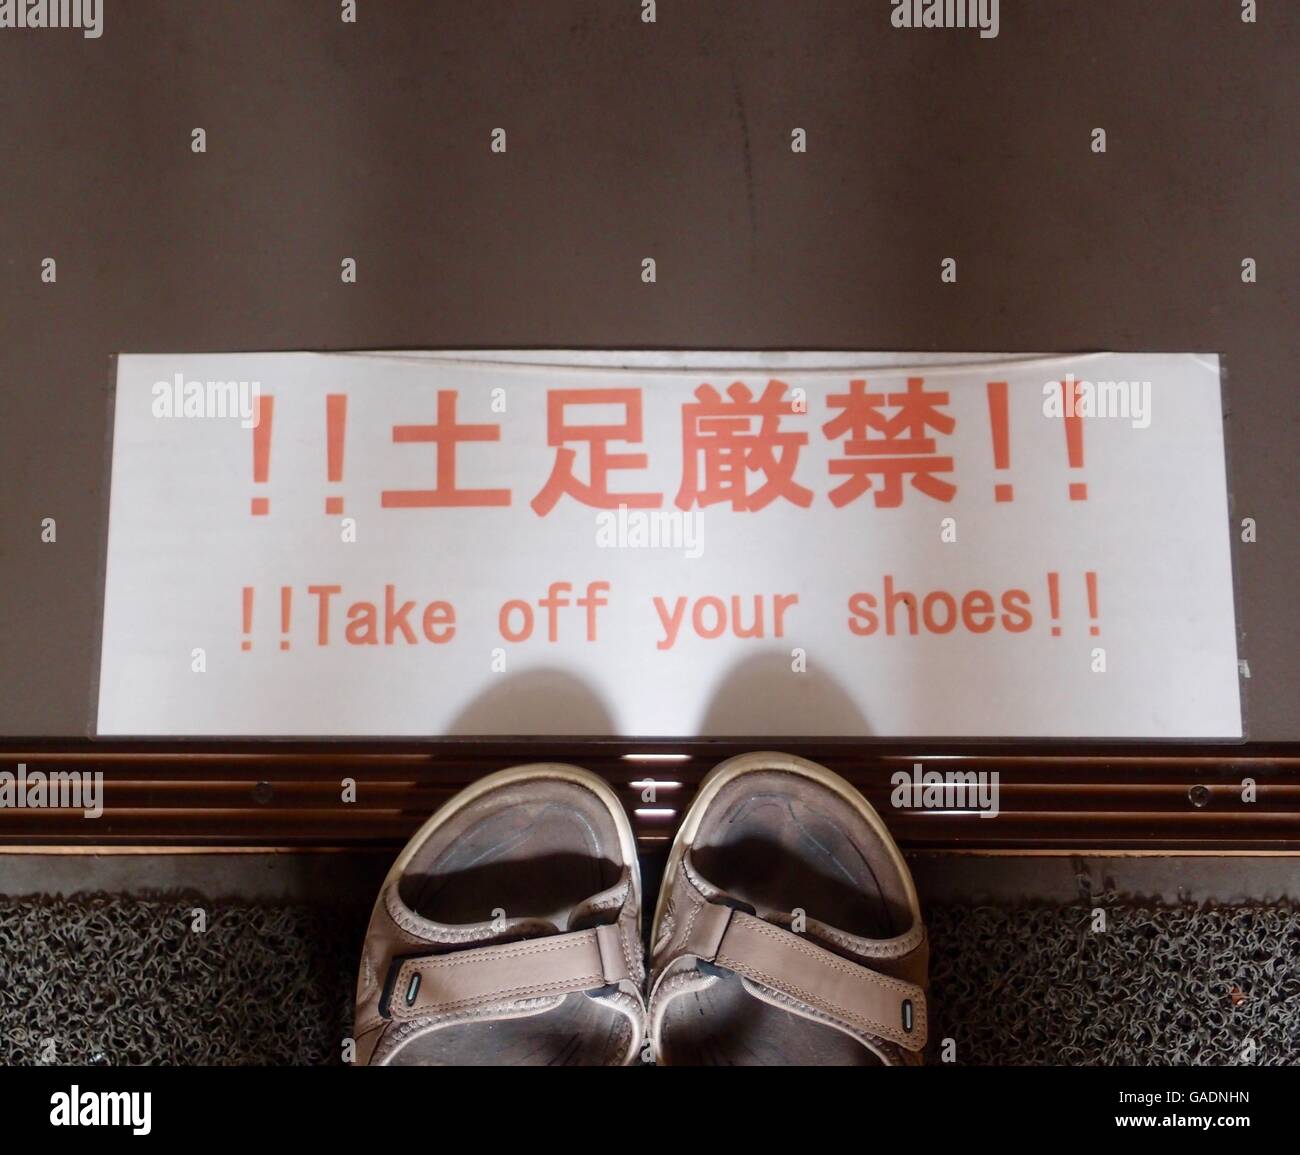 Typische japanische Zeichen auf dem Boden, in Japanisch und Englisch: "Zieh  deine Schuhe aus!" Die Zehen ein paar Sandalen darunter Stockfotografie -  Alamy